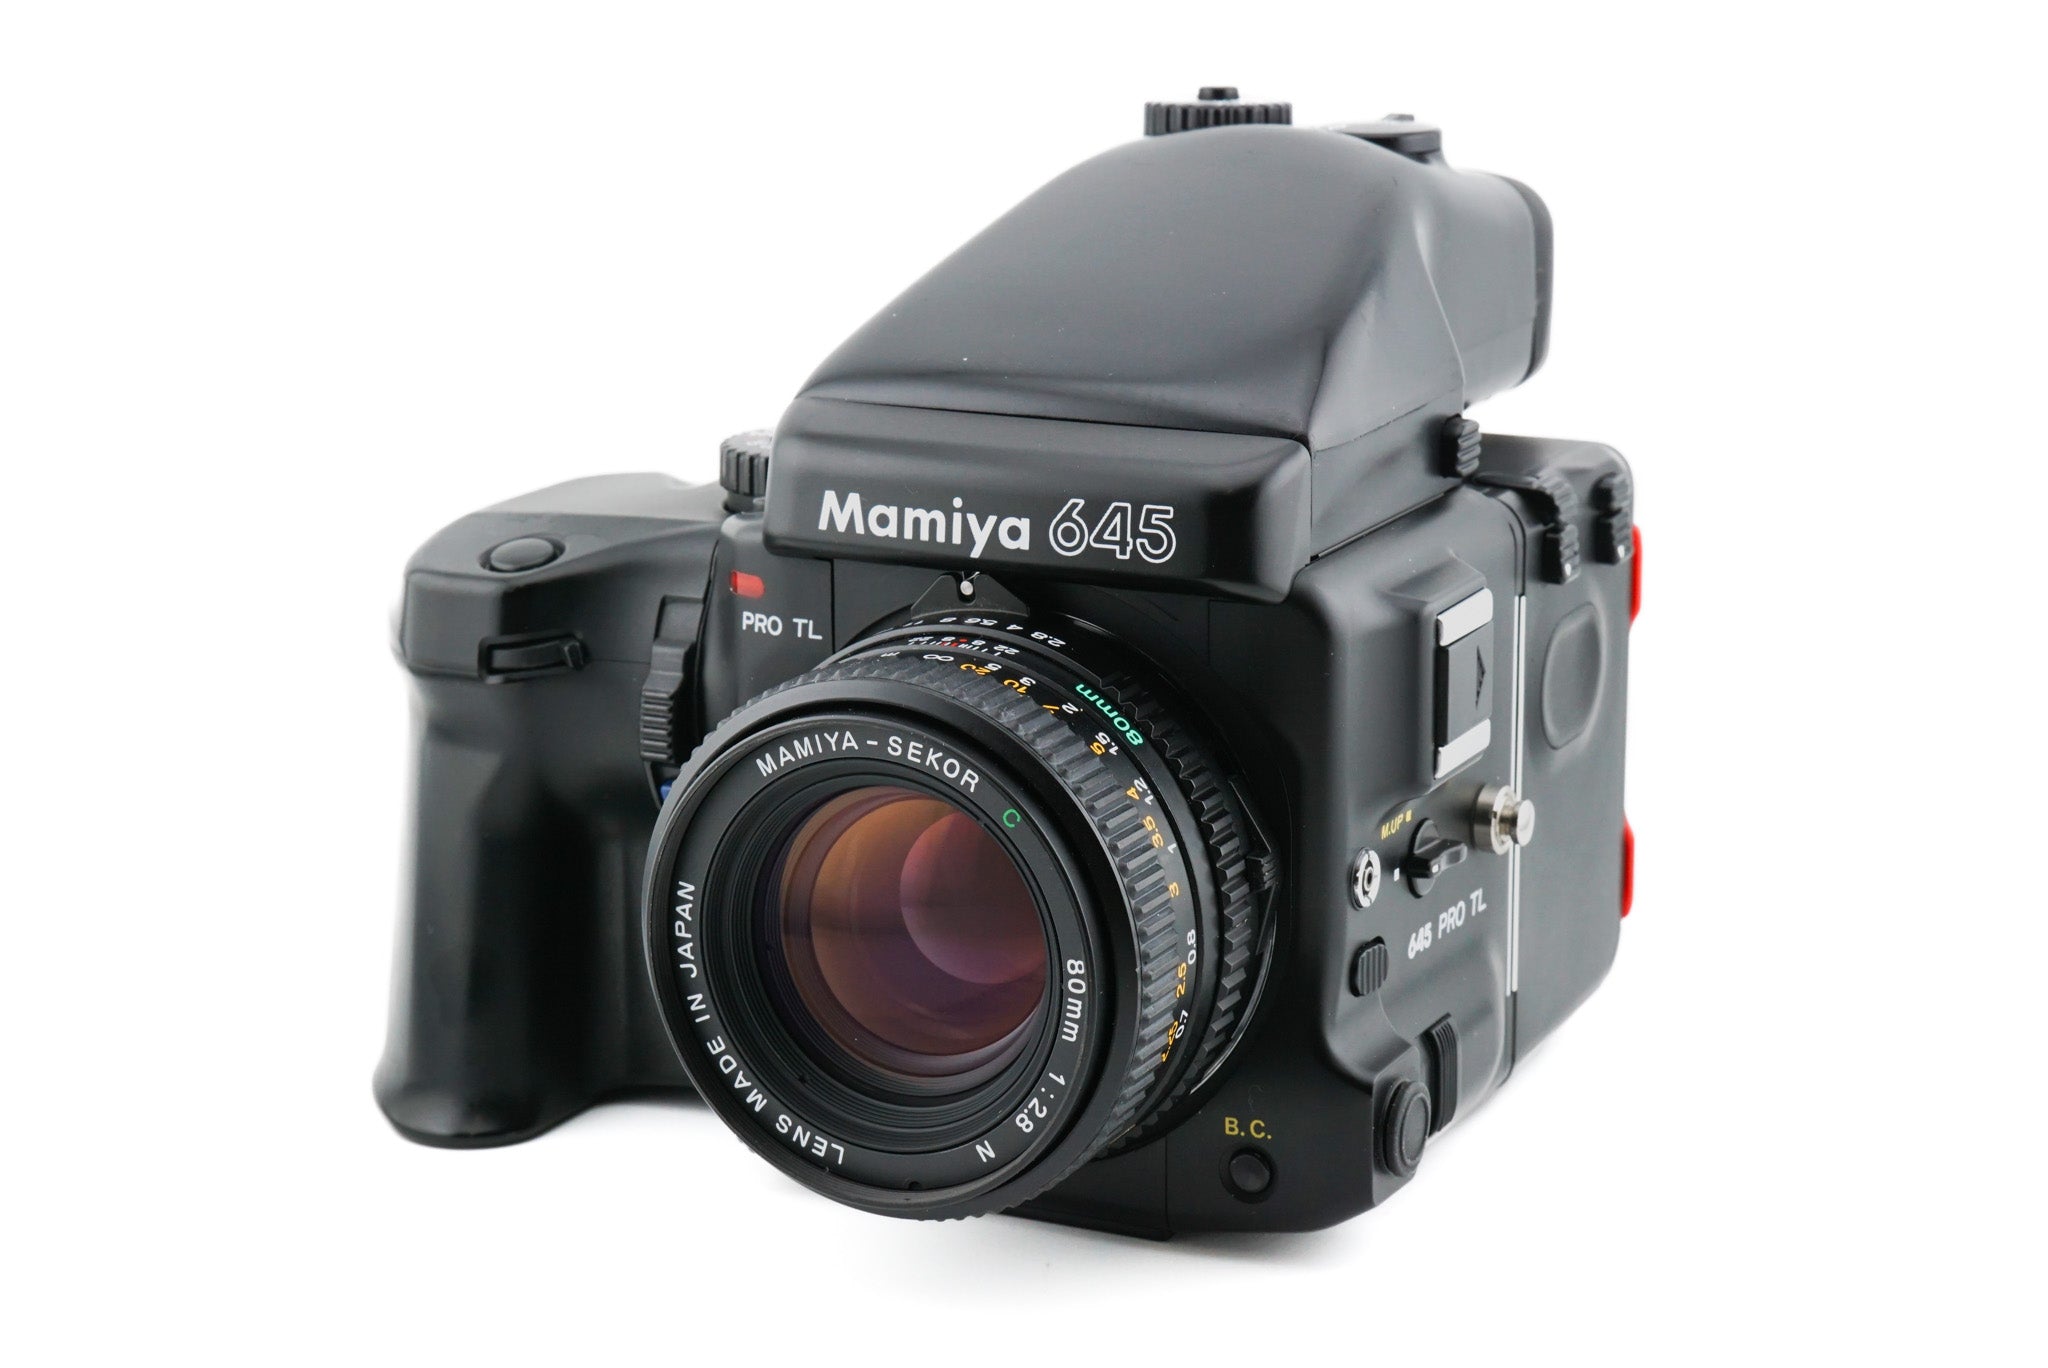 Mamiya 645 Pro TL + 80mm f2.8 Sekor C N + 120/220 Roll Film Holder HA401 +  Power Drive Winder Grip WG402 + AE Prism Finder FE401